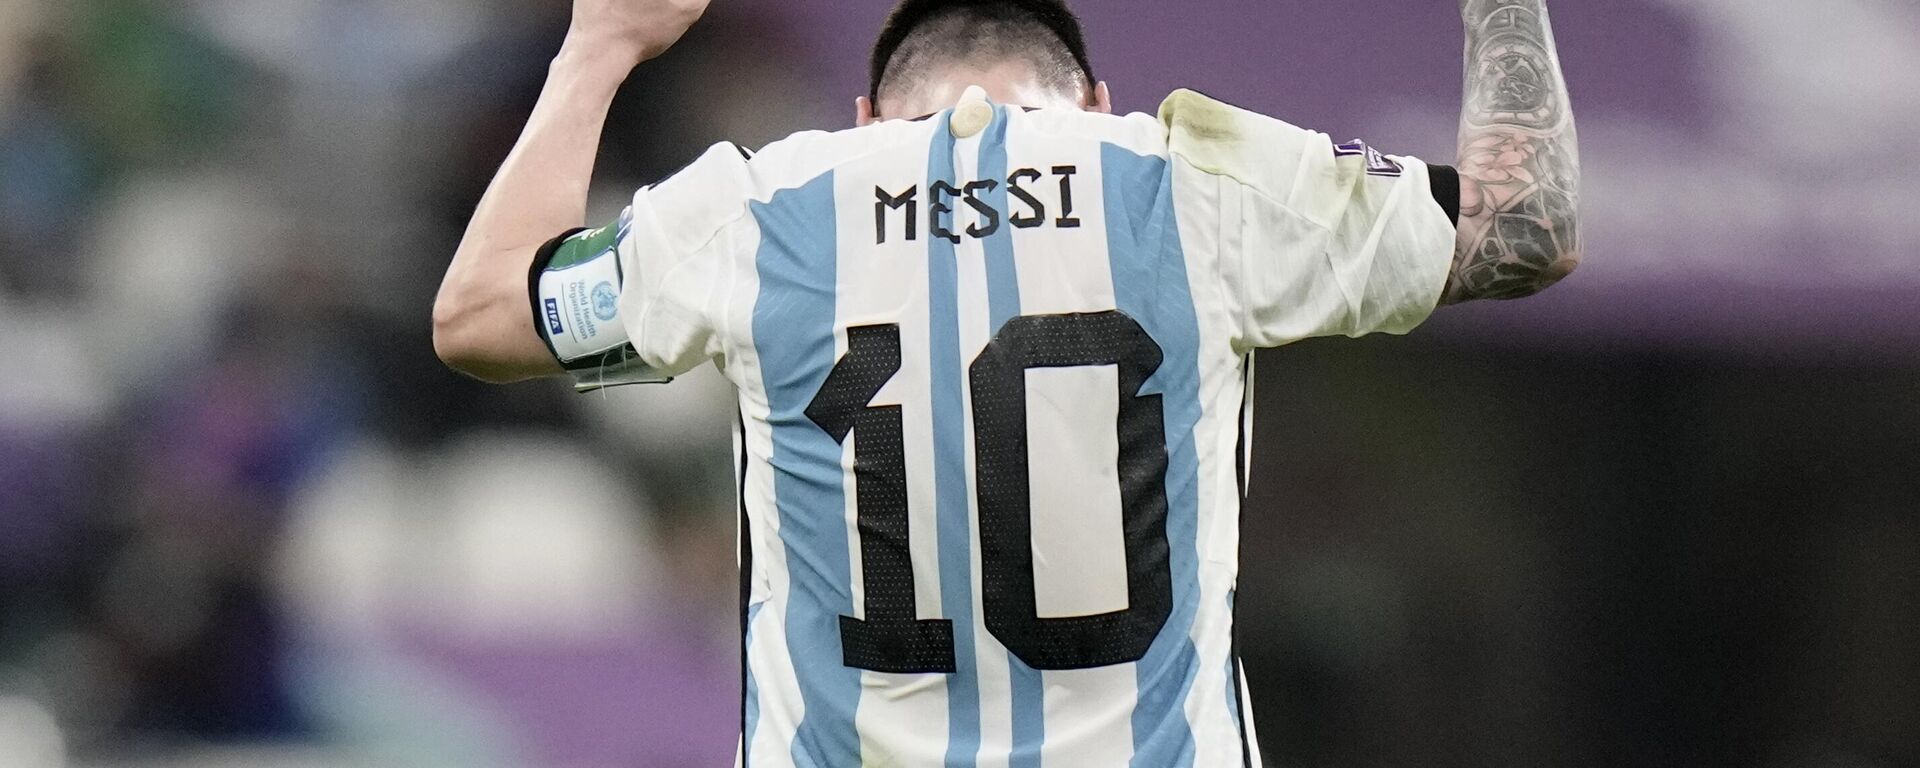 Lionel Messi reacciona al pitido final del partido de fútbol del entre Argentina y México, 26 de noviembre de 2022 - Sputnik Mundo, 1920, 14.12.2022